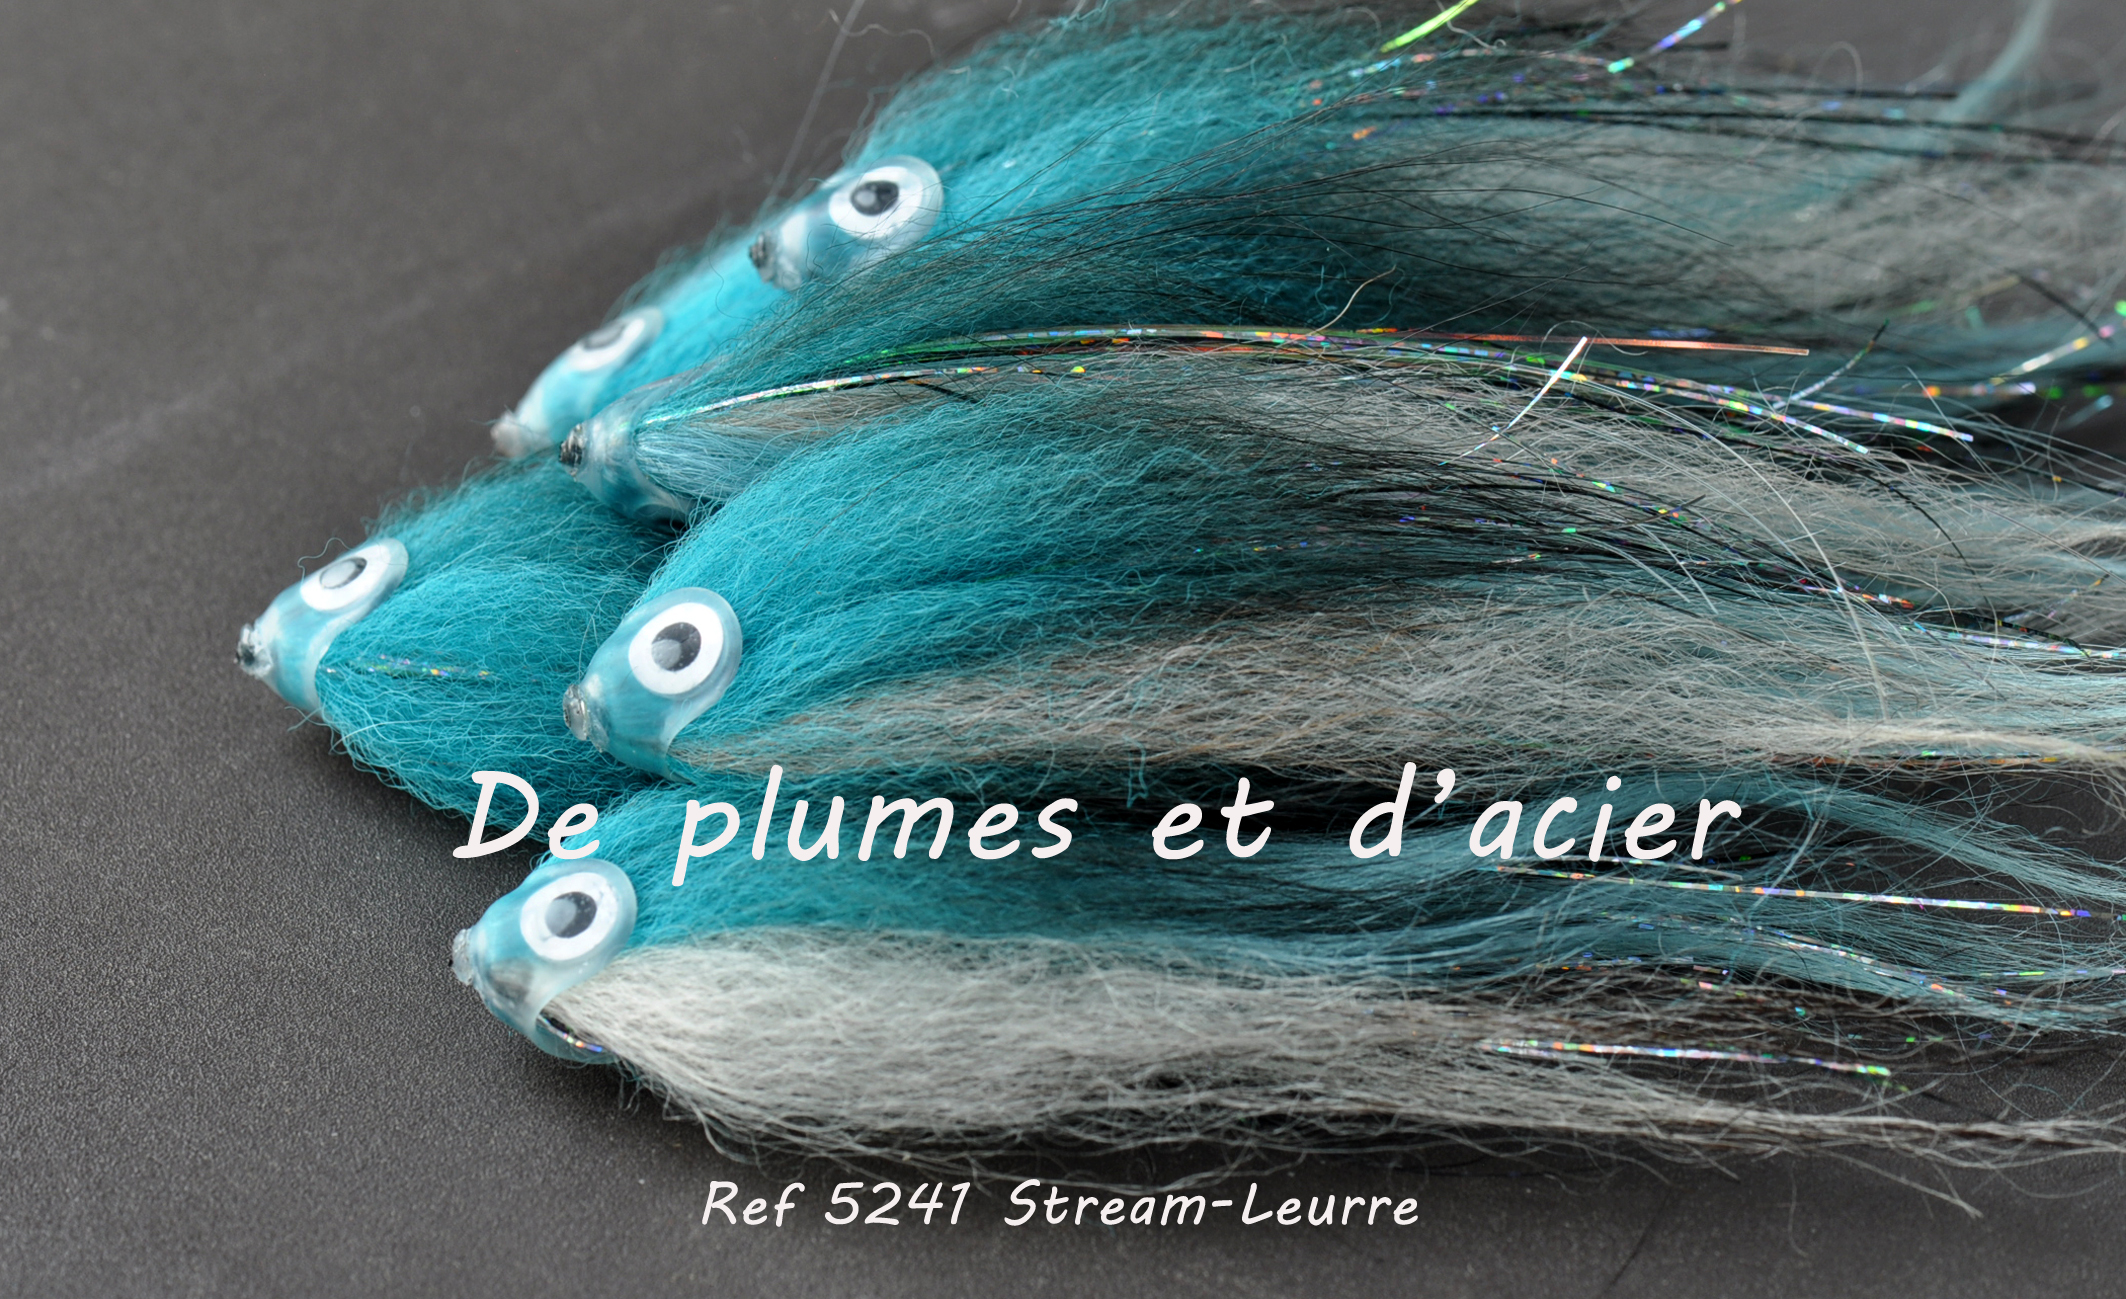 Mouche pêche "De plumes et d'acier"Stream-Leurre Bleu